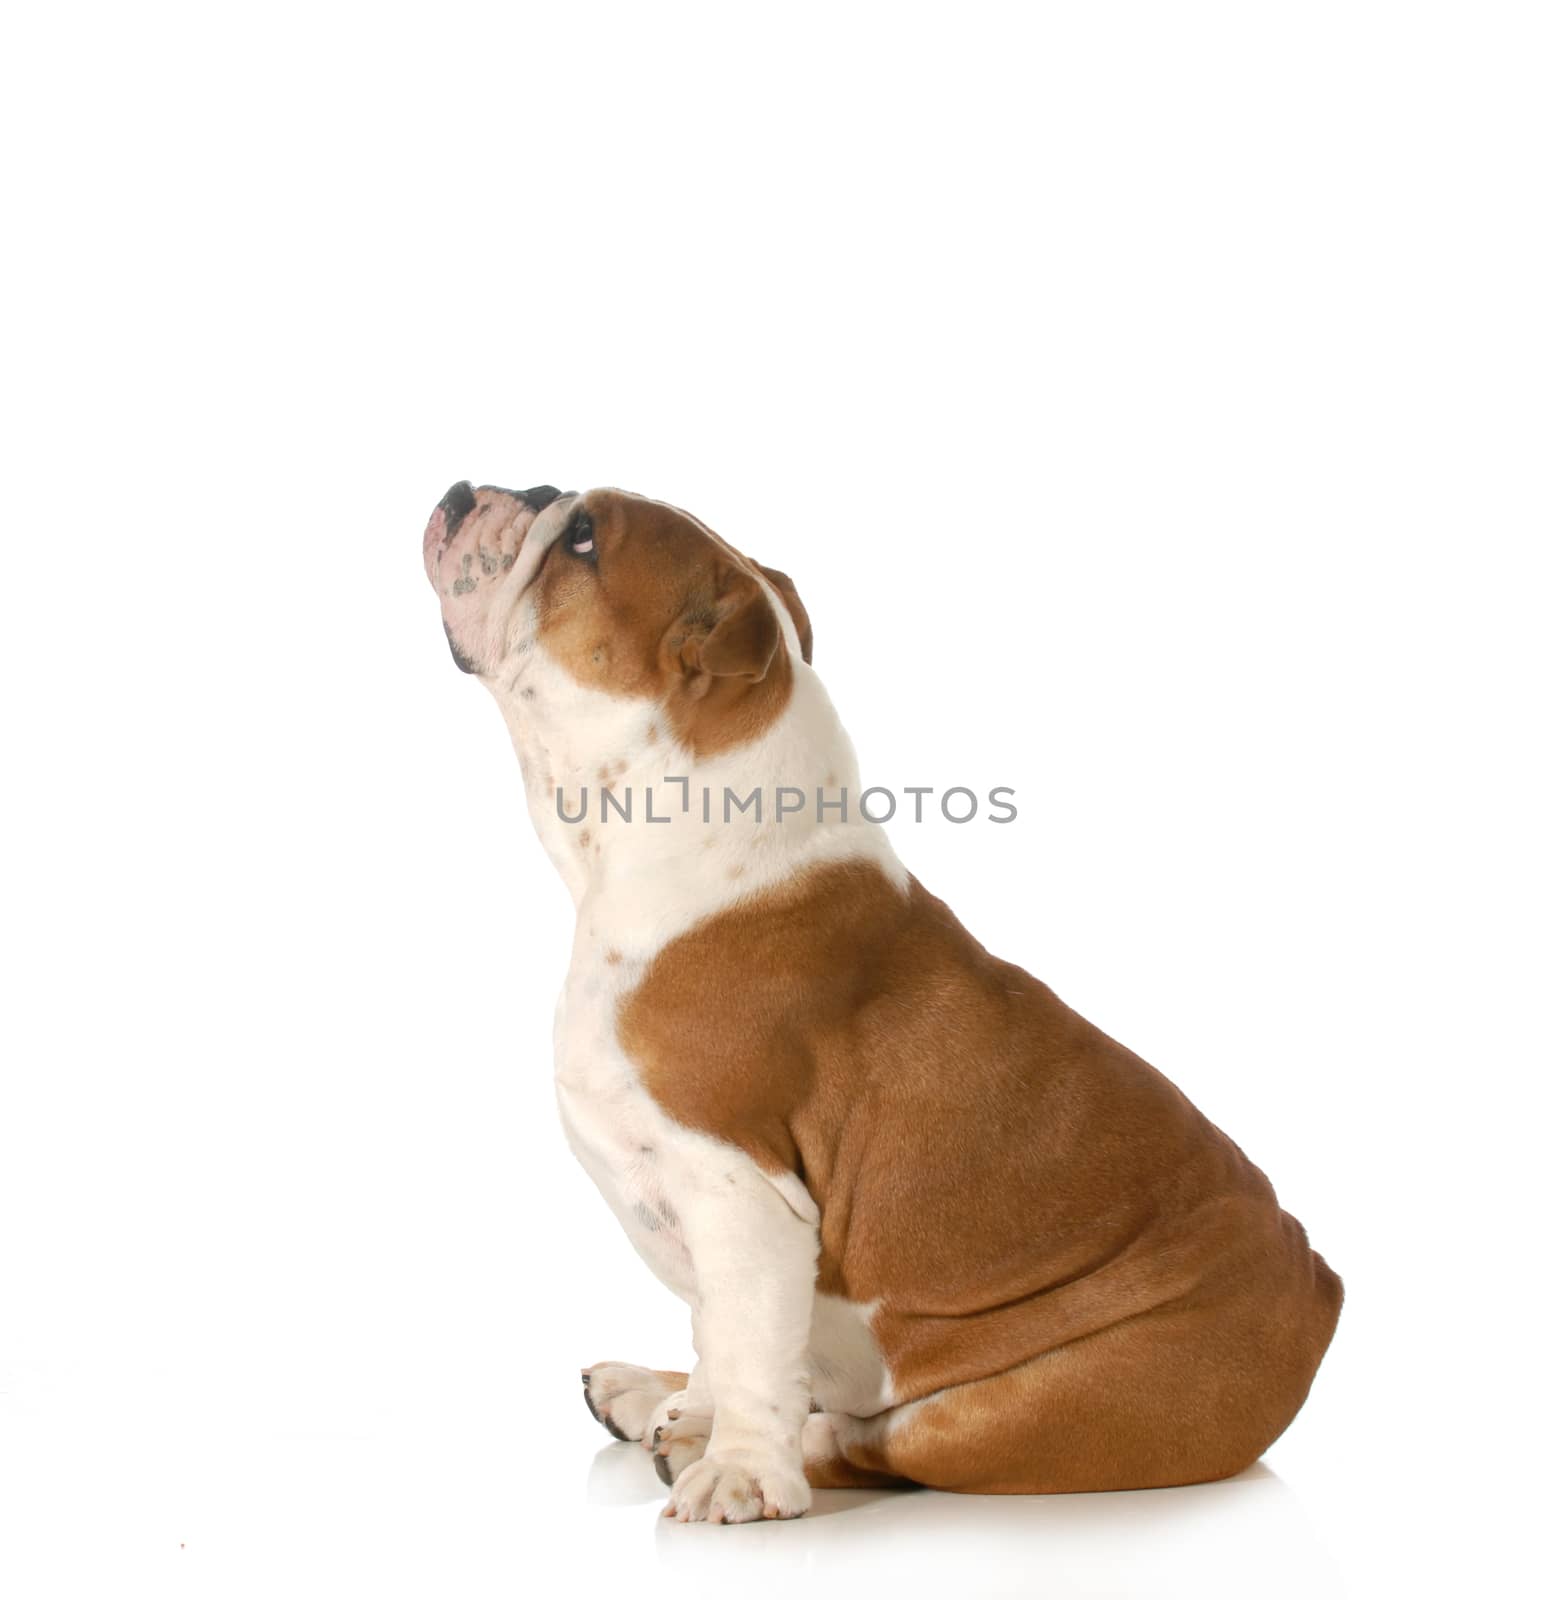 dog looking up - english bulldog sitting side profile looking upwards isolated on white background